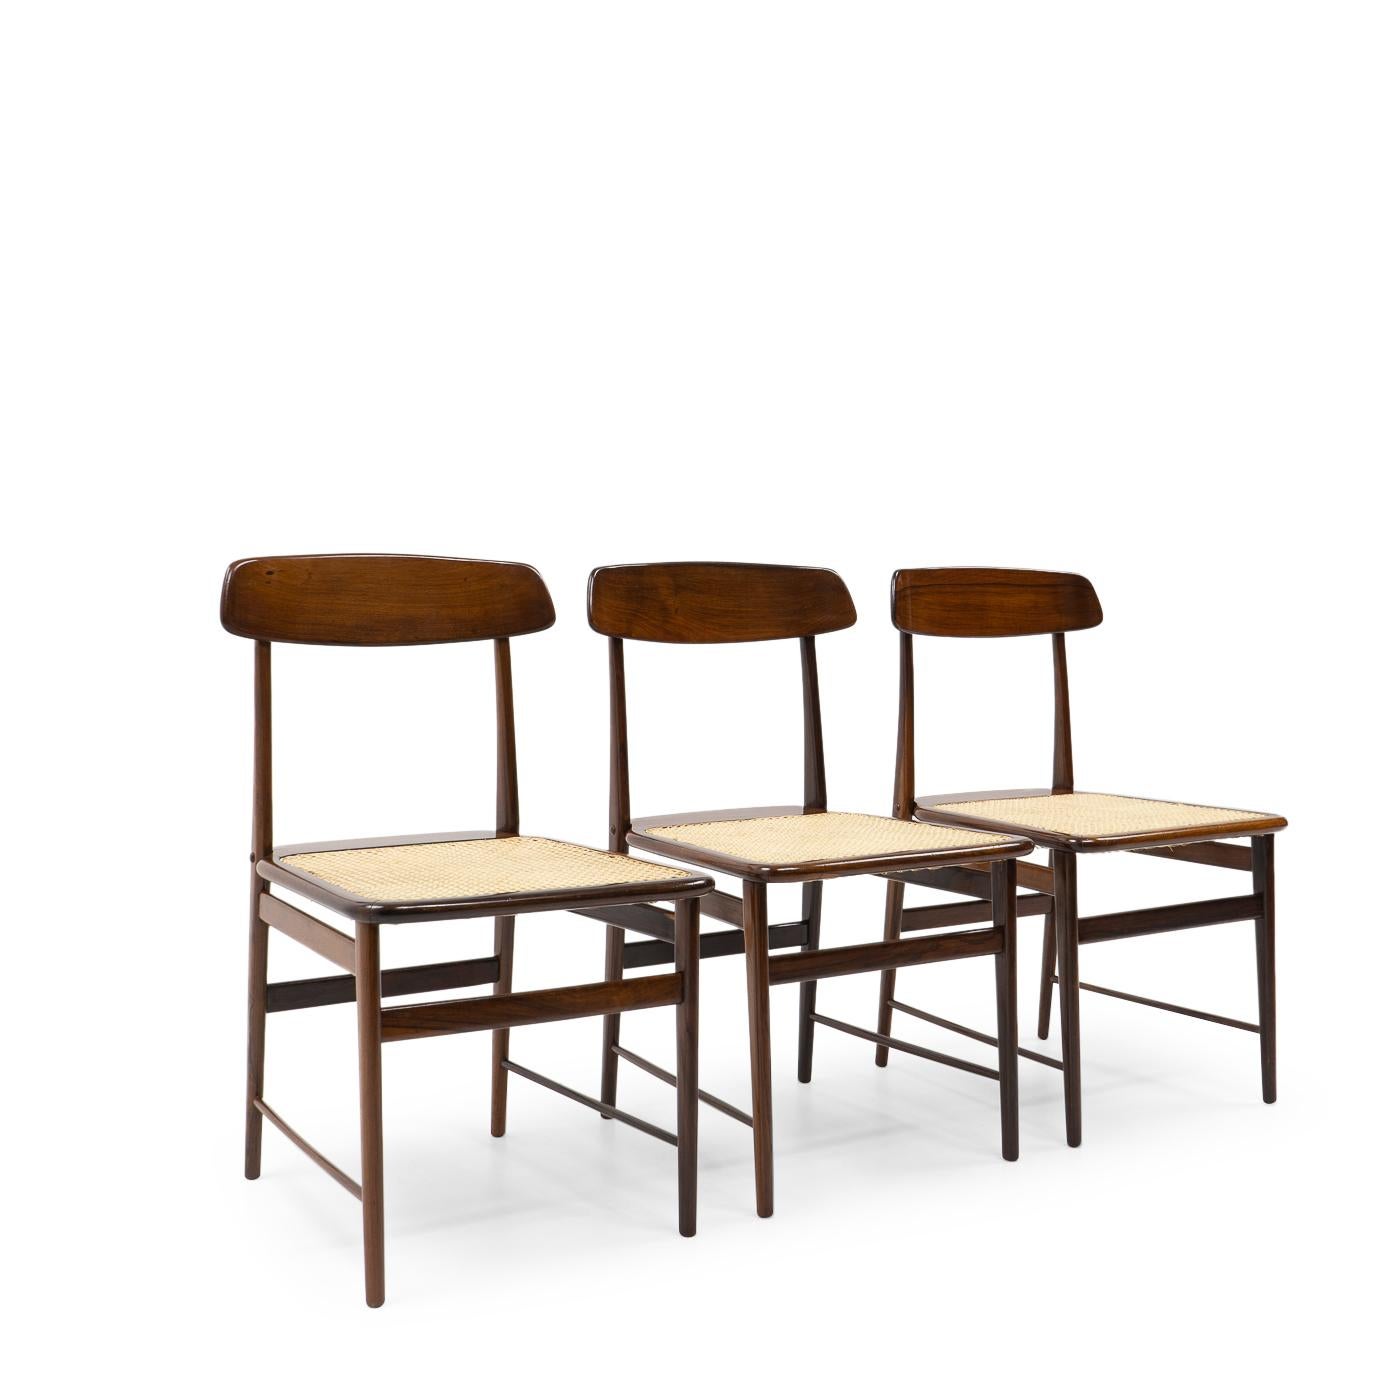 Sergio Rodrigues a établi la norme en matière de mobilier moderne au Brésil dans les années 1950. Ses œuvres sont devenues une référence pour le design brésilien, qui utilise souvent des espèces de bois indigènes comme le jacaranda et